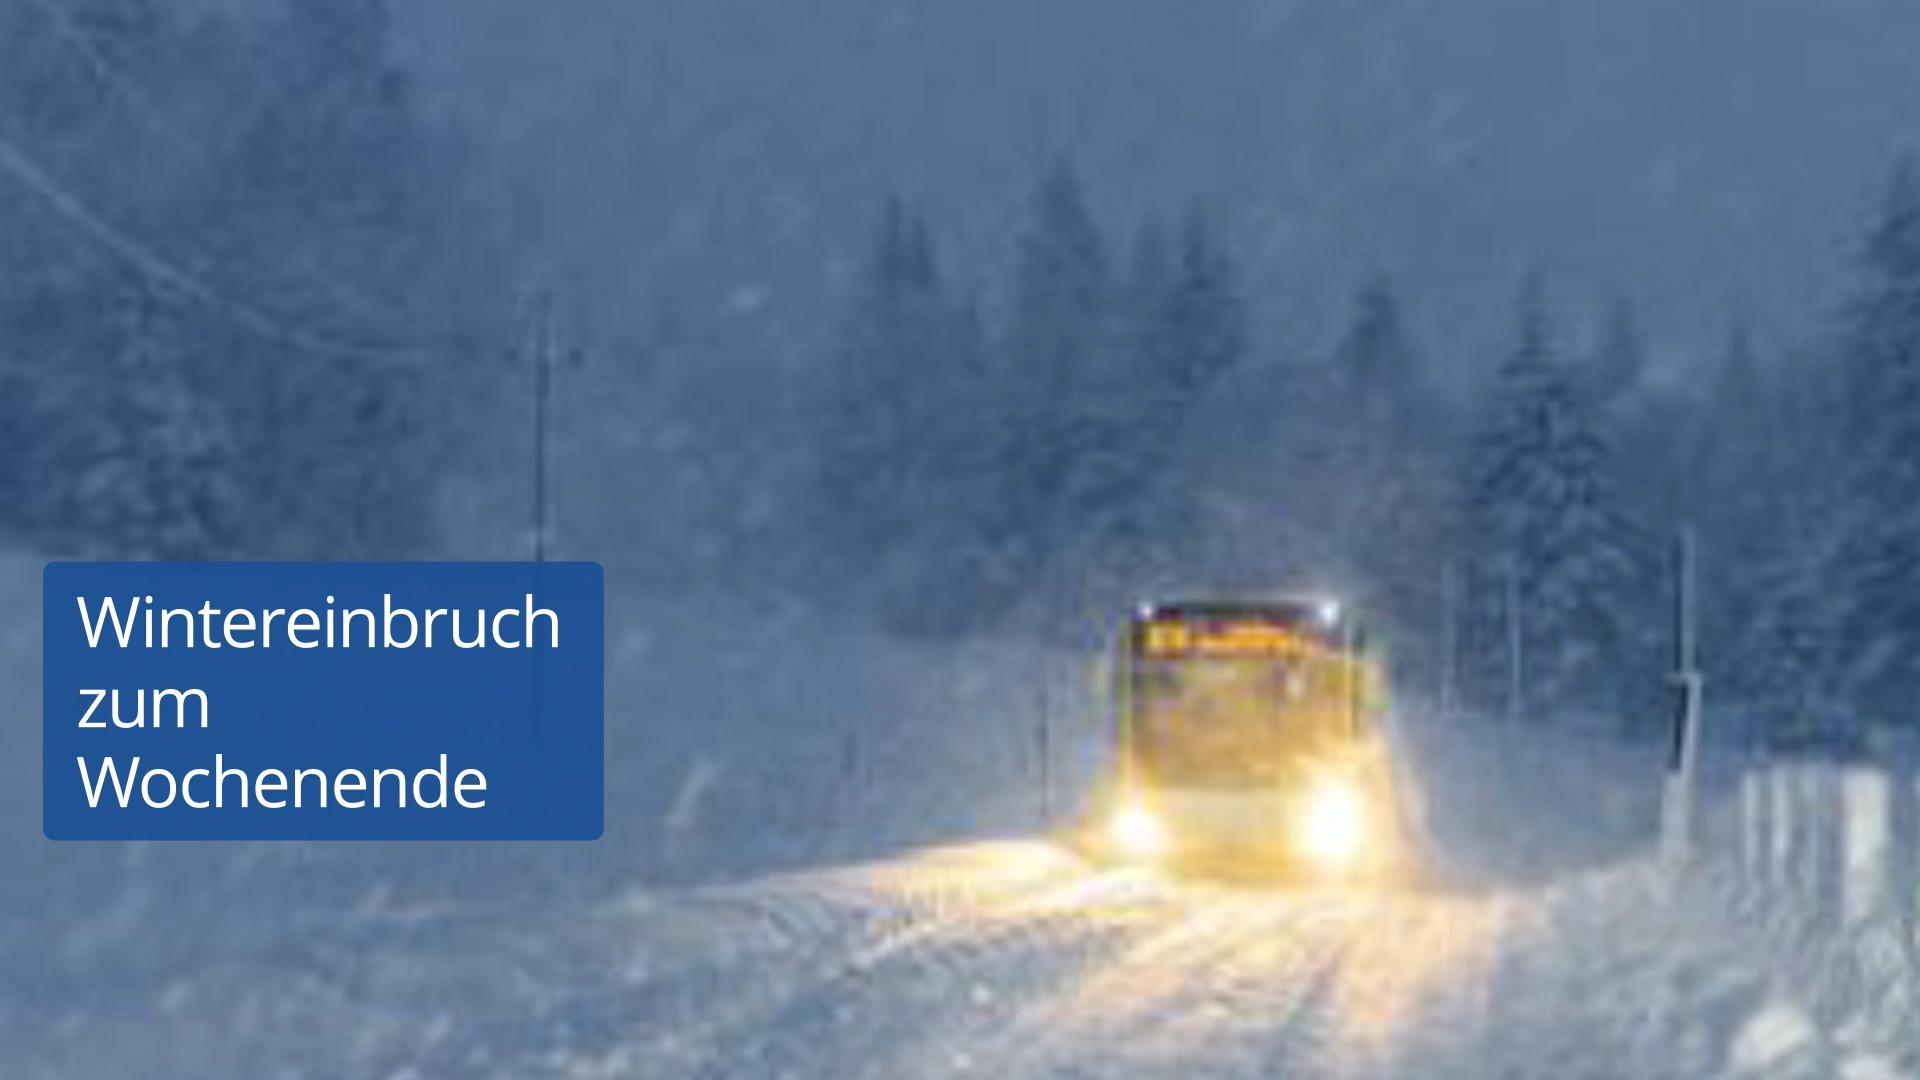 Wintereinbruch in Deutschland: Winter gibt Ende Februar mit Schnee